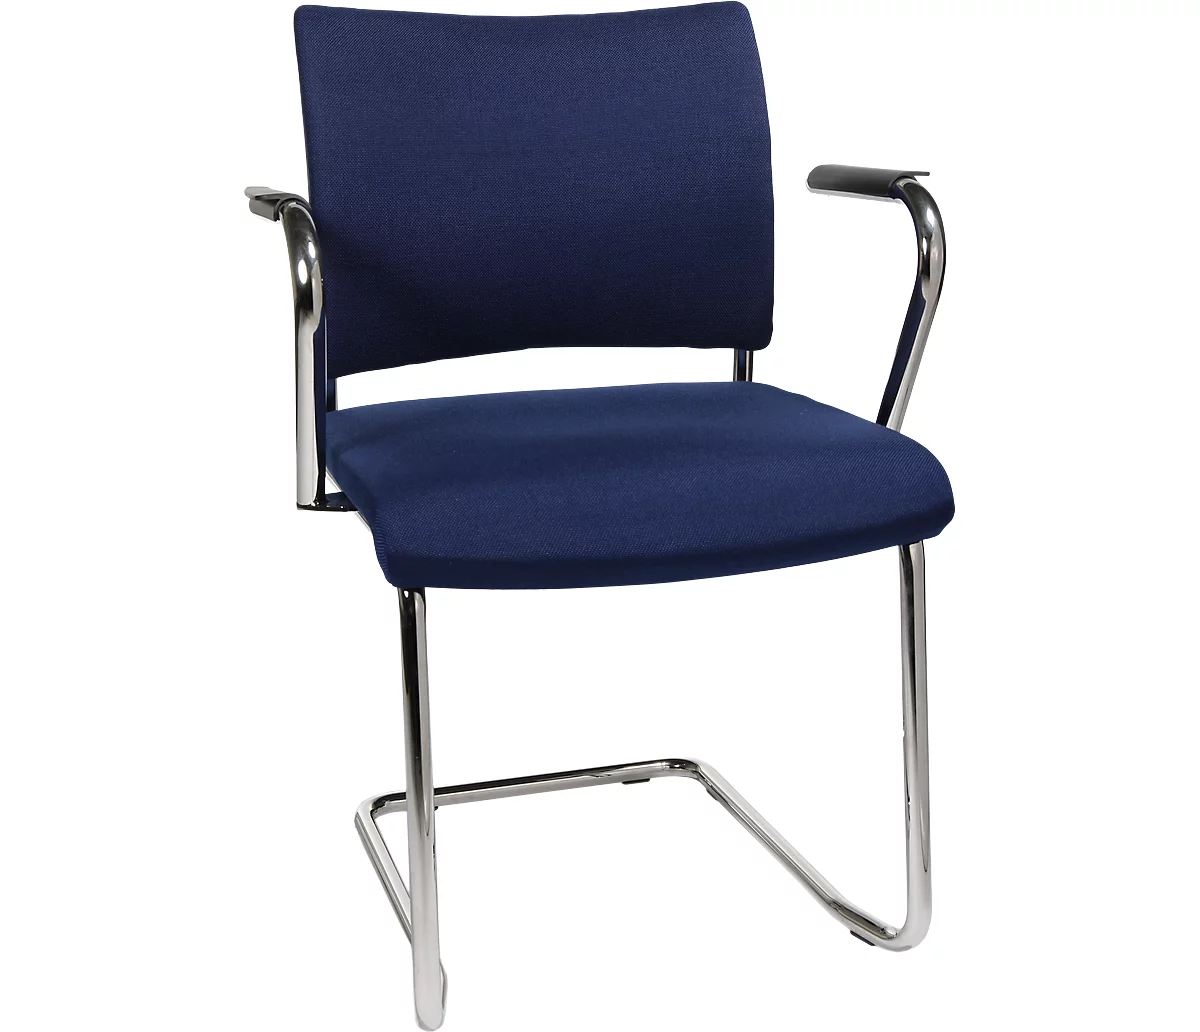 Silla cantilever SEAT POINT, acolchado, sin reposabrazos, apilable, juego de 2, azul